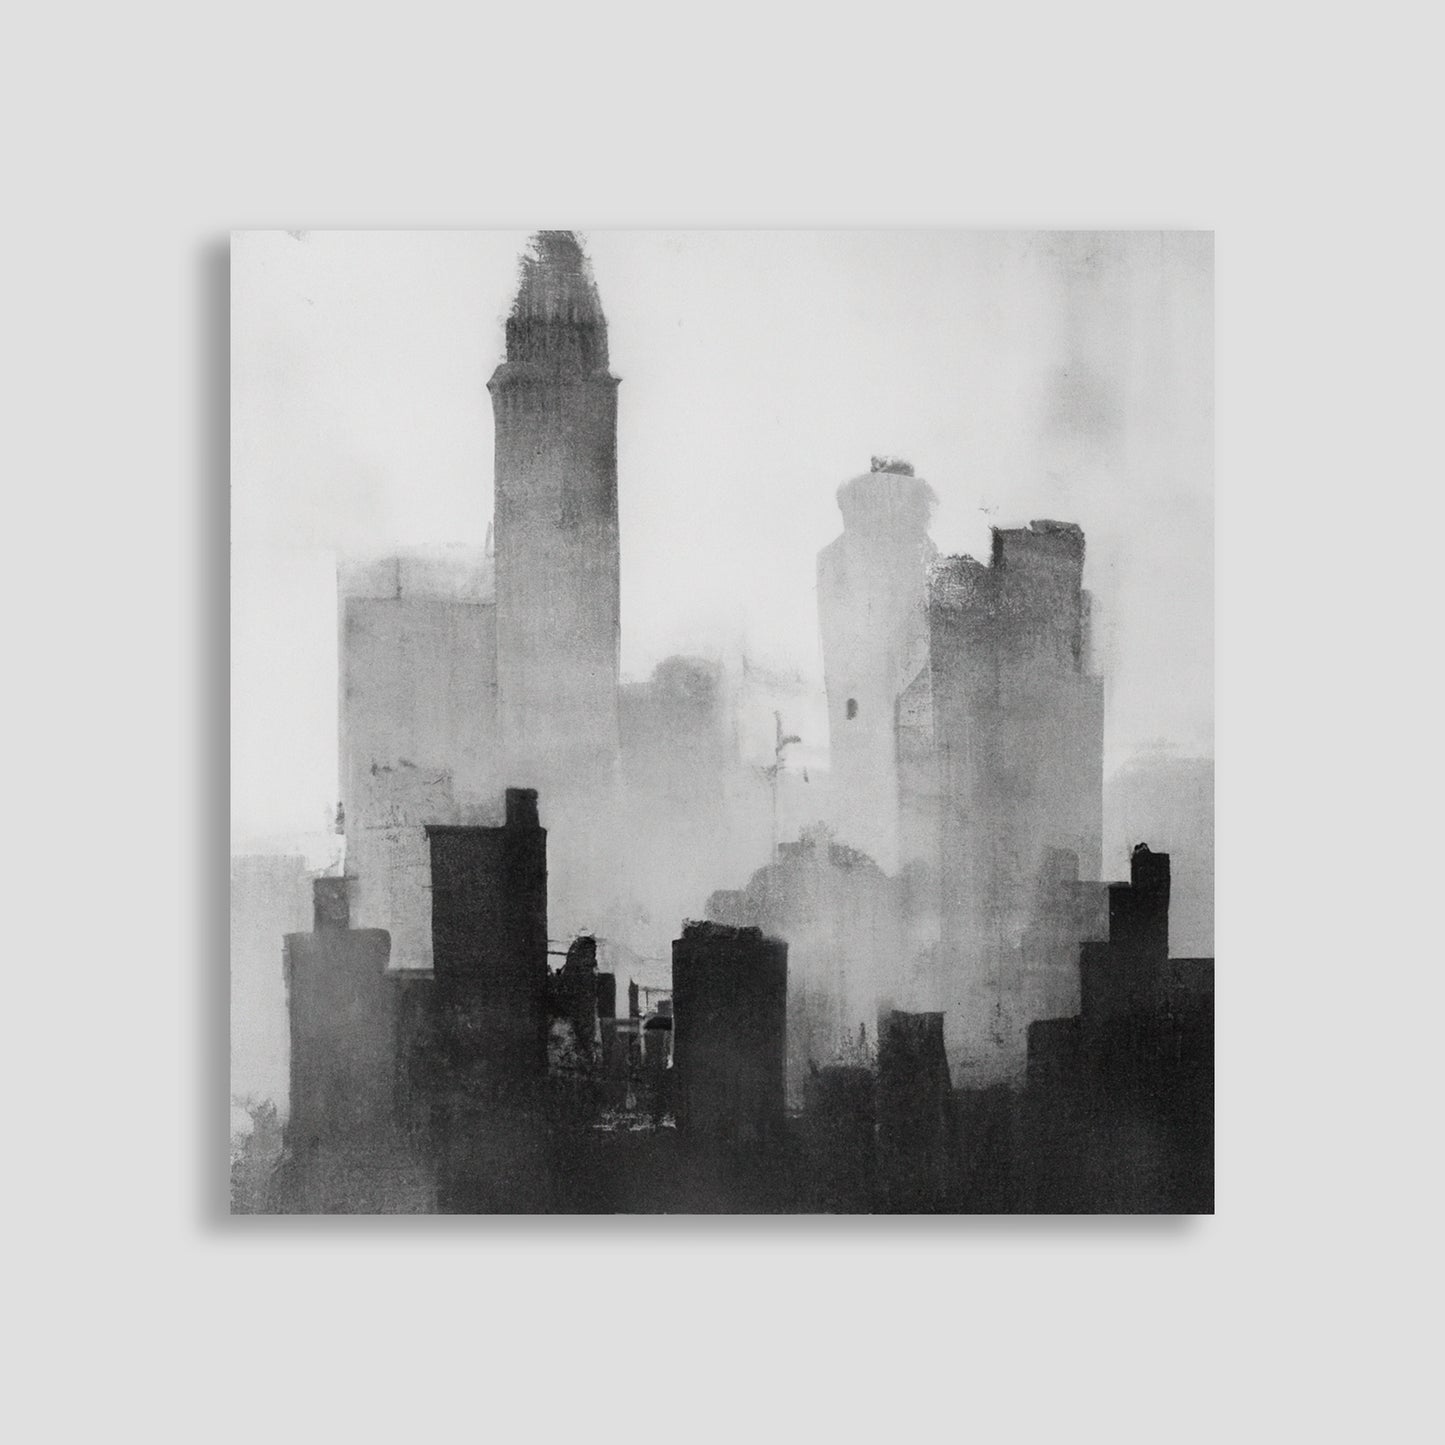 Ilustración en blanco y negro de una ciudad envuelta en niebla, con siluetas de rascacielos y edificios.